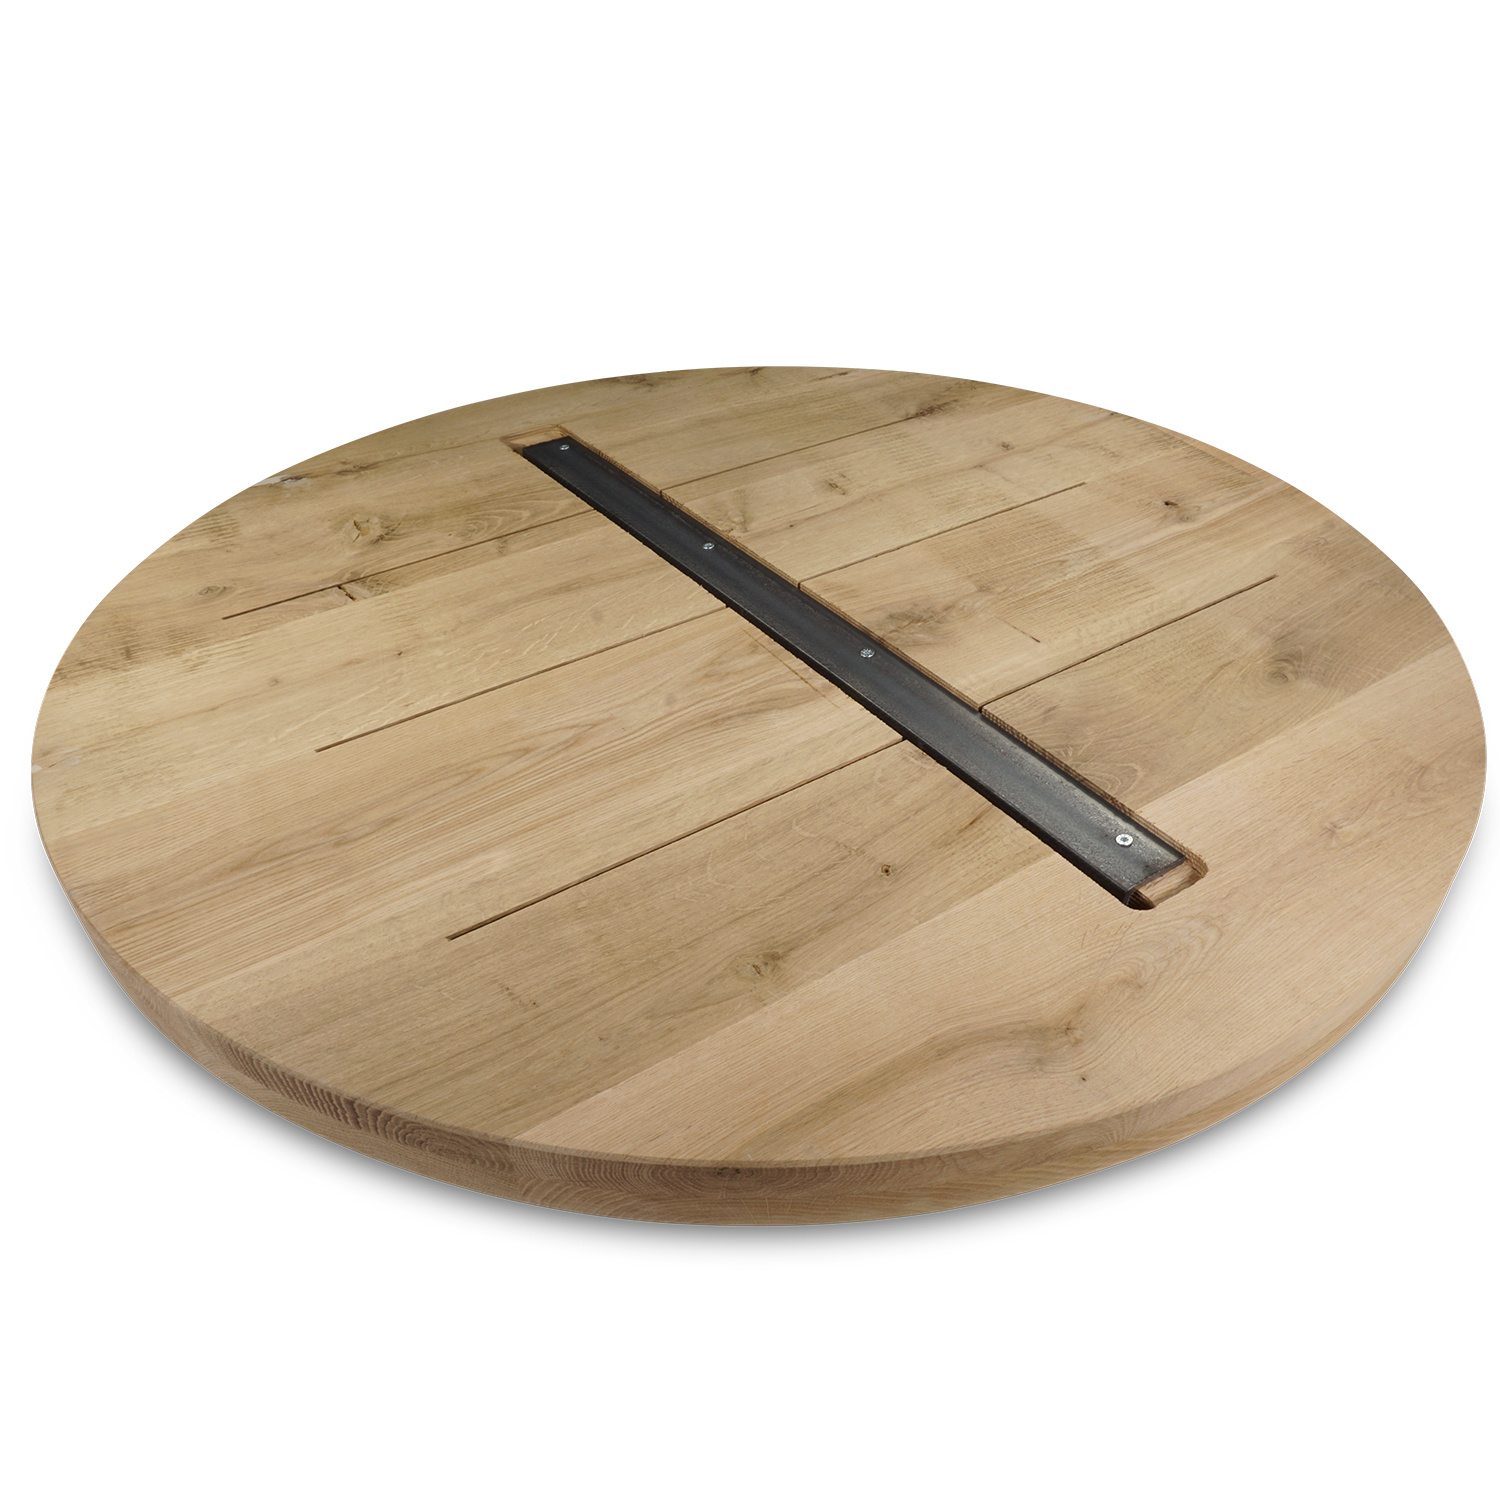  Tischplatte Eiche rund nach Maß - 4 cm dick (2-lagig) - Eichenholz A-Qualität - Durchmesser: 30 - 180 cm - Eiche Tischplatte rund massiv - verleimt & künstlich getrocknet (HF 8-12%)